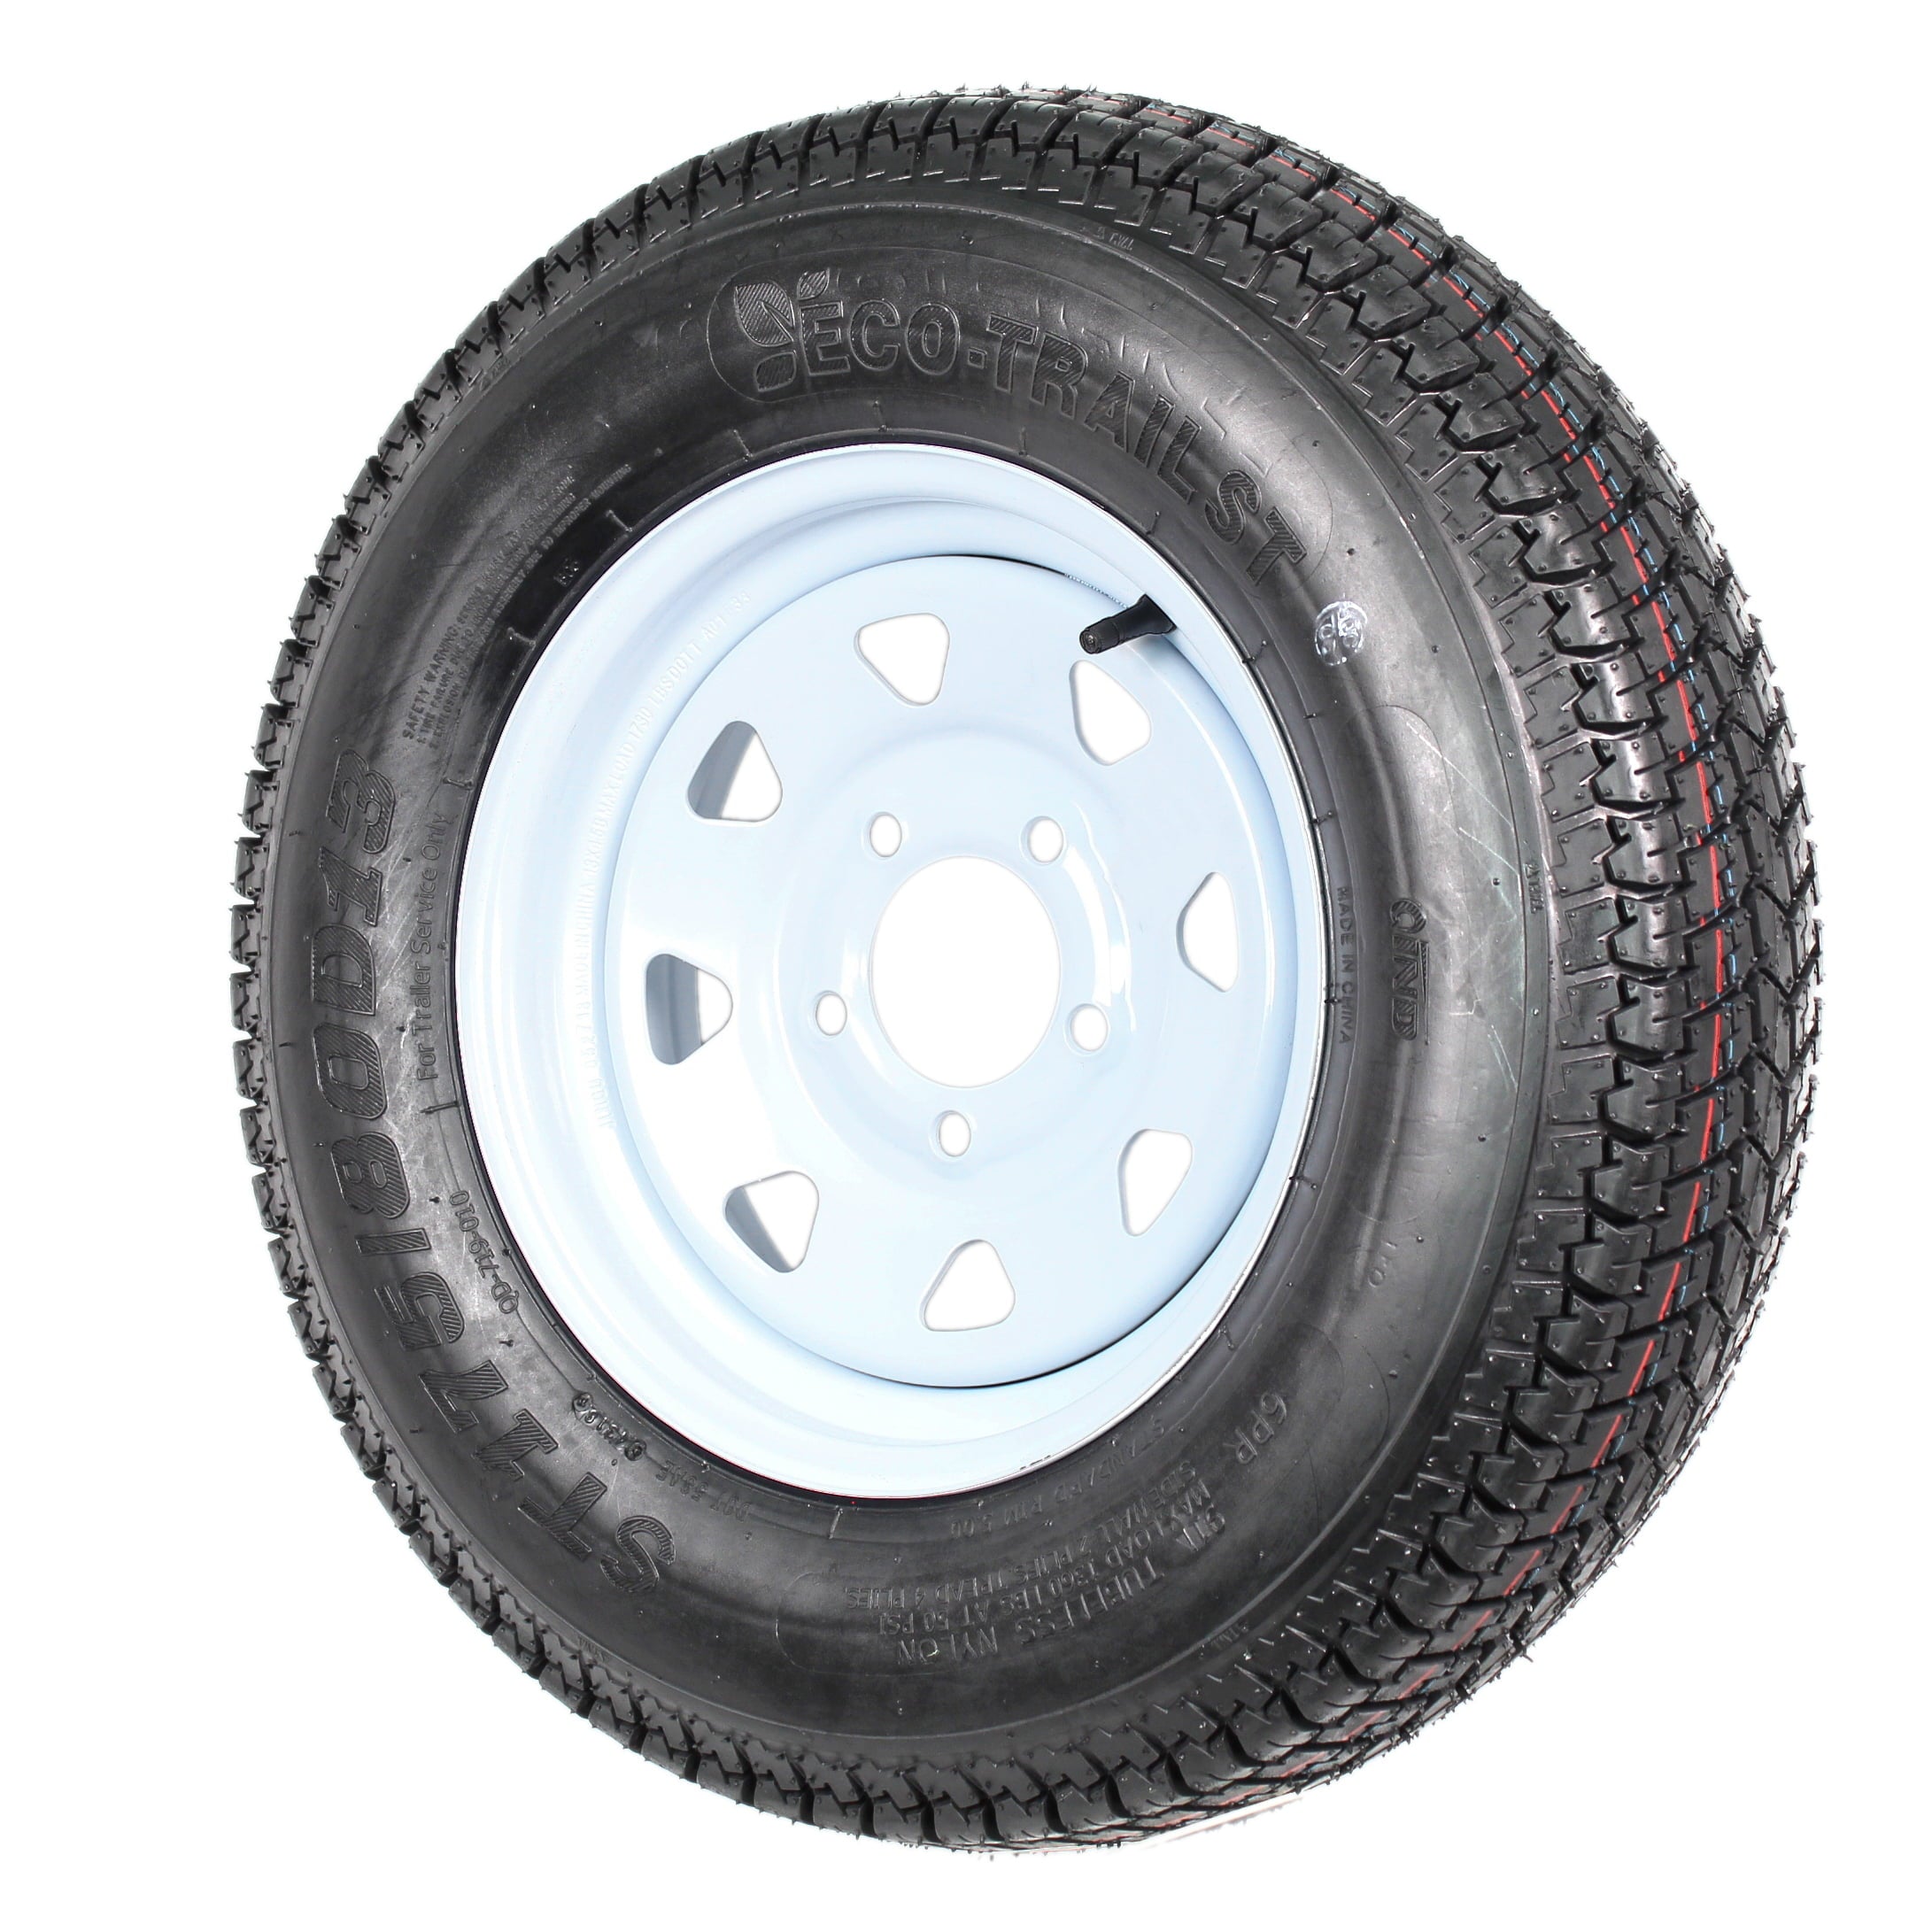 2-Pk Trailer Tires Rims ST175/80D13 175/80 13 B78-13 LRC 5 Lug White Spoke Wheel